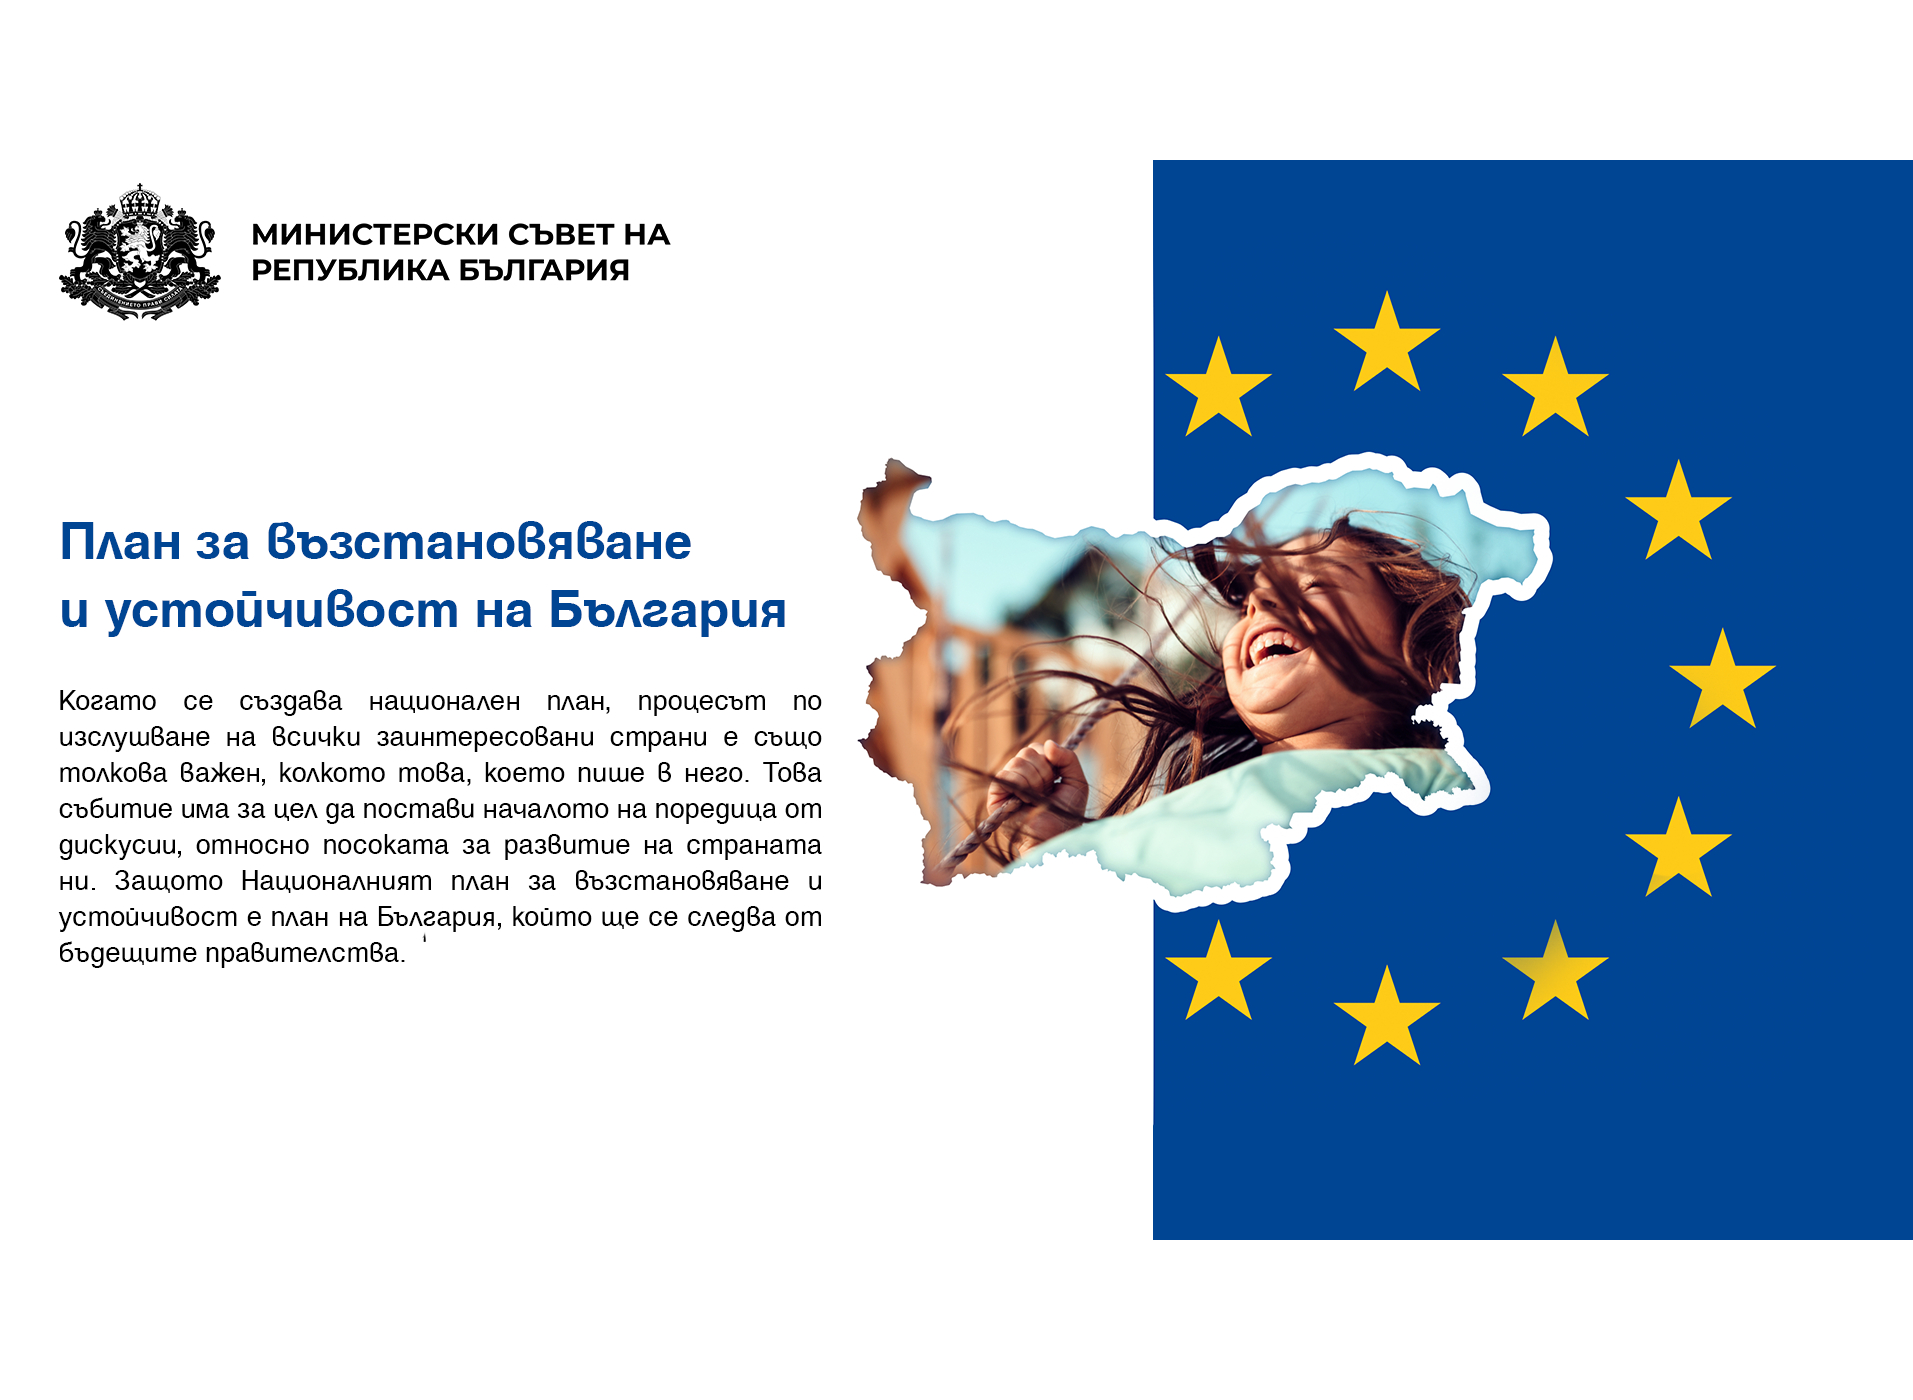 NextGenerationEU: България представя искане за изменение на плана за възстановяване и устойчивост